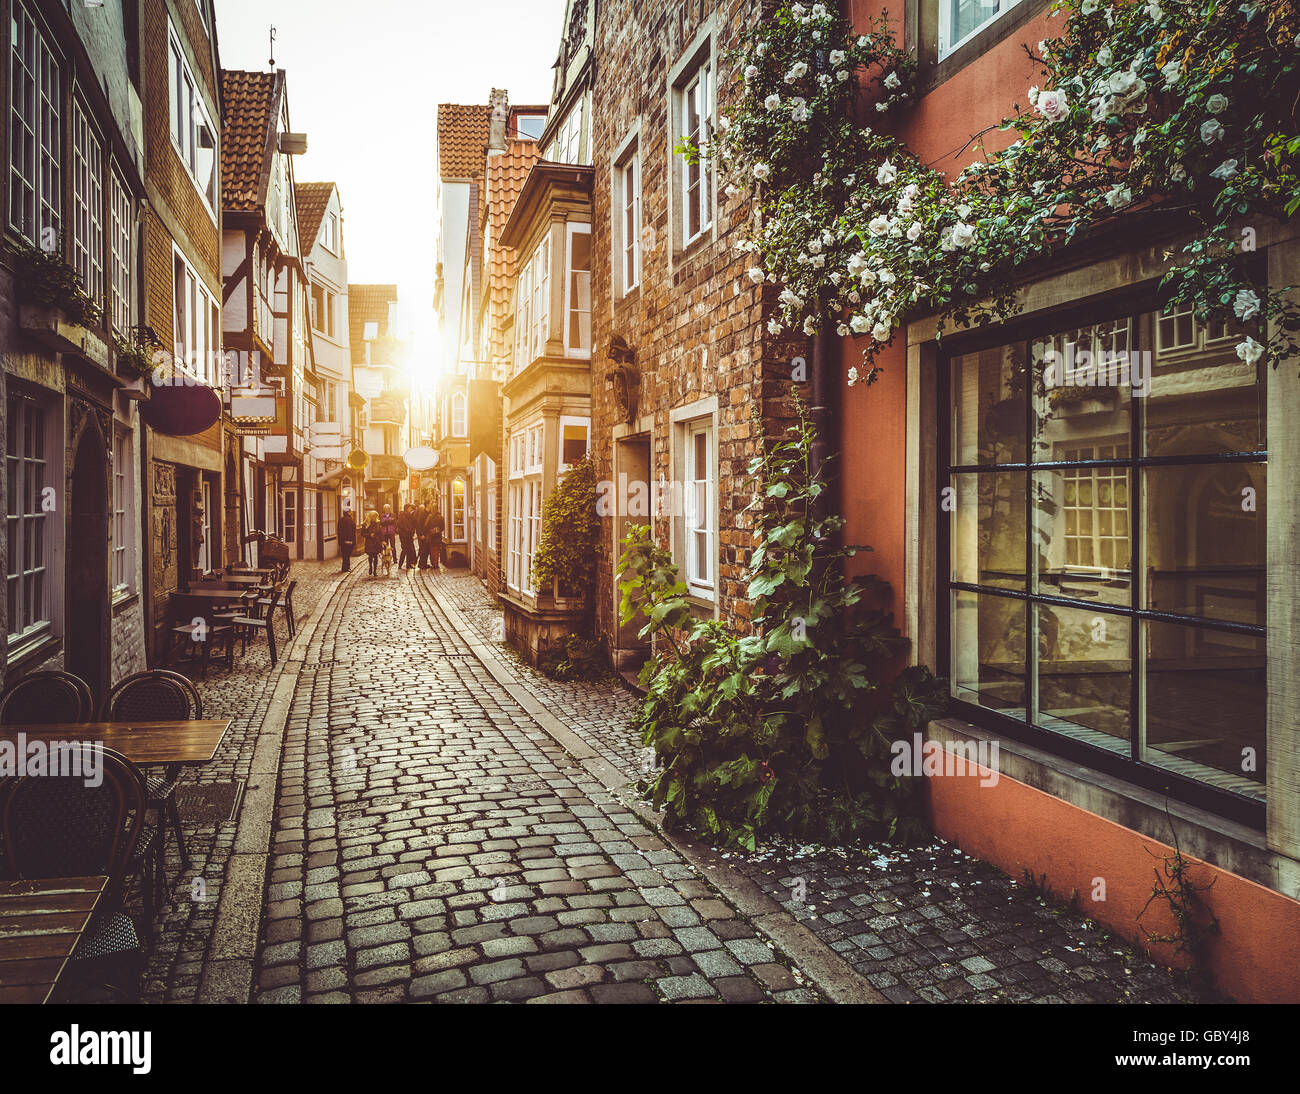 Incantevoli scene di strada in una città vecchia in Europa al tramonto con retro vintage effetto di filtro Foto Stock